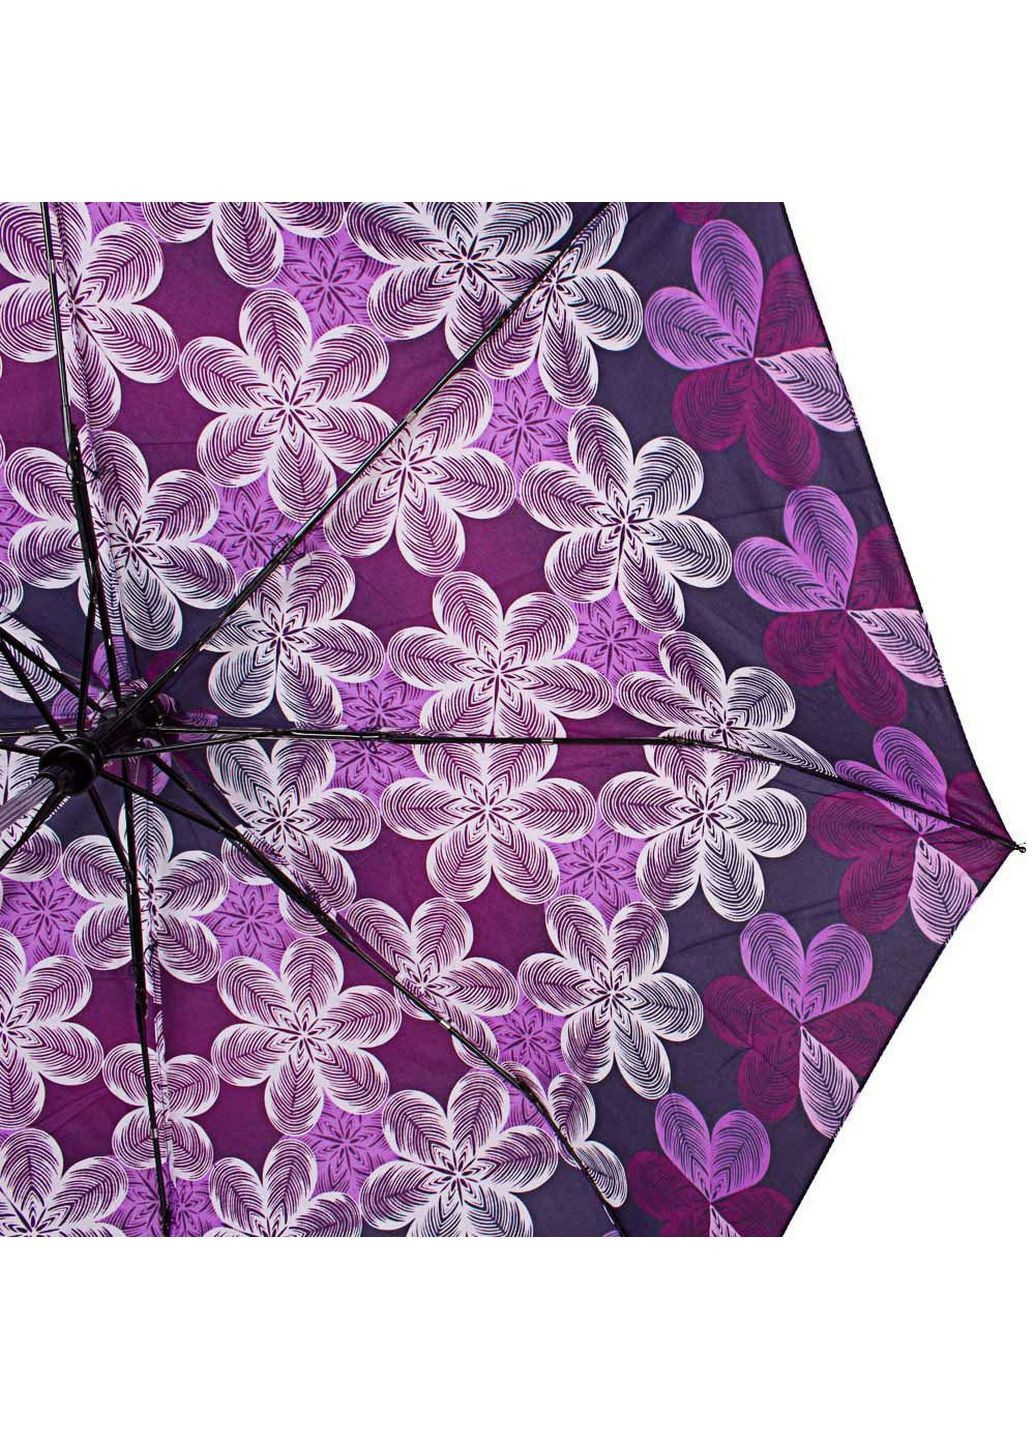 Жіноча складна парасолька напівавтомат Airton (282591881)